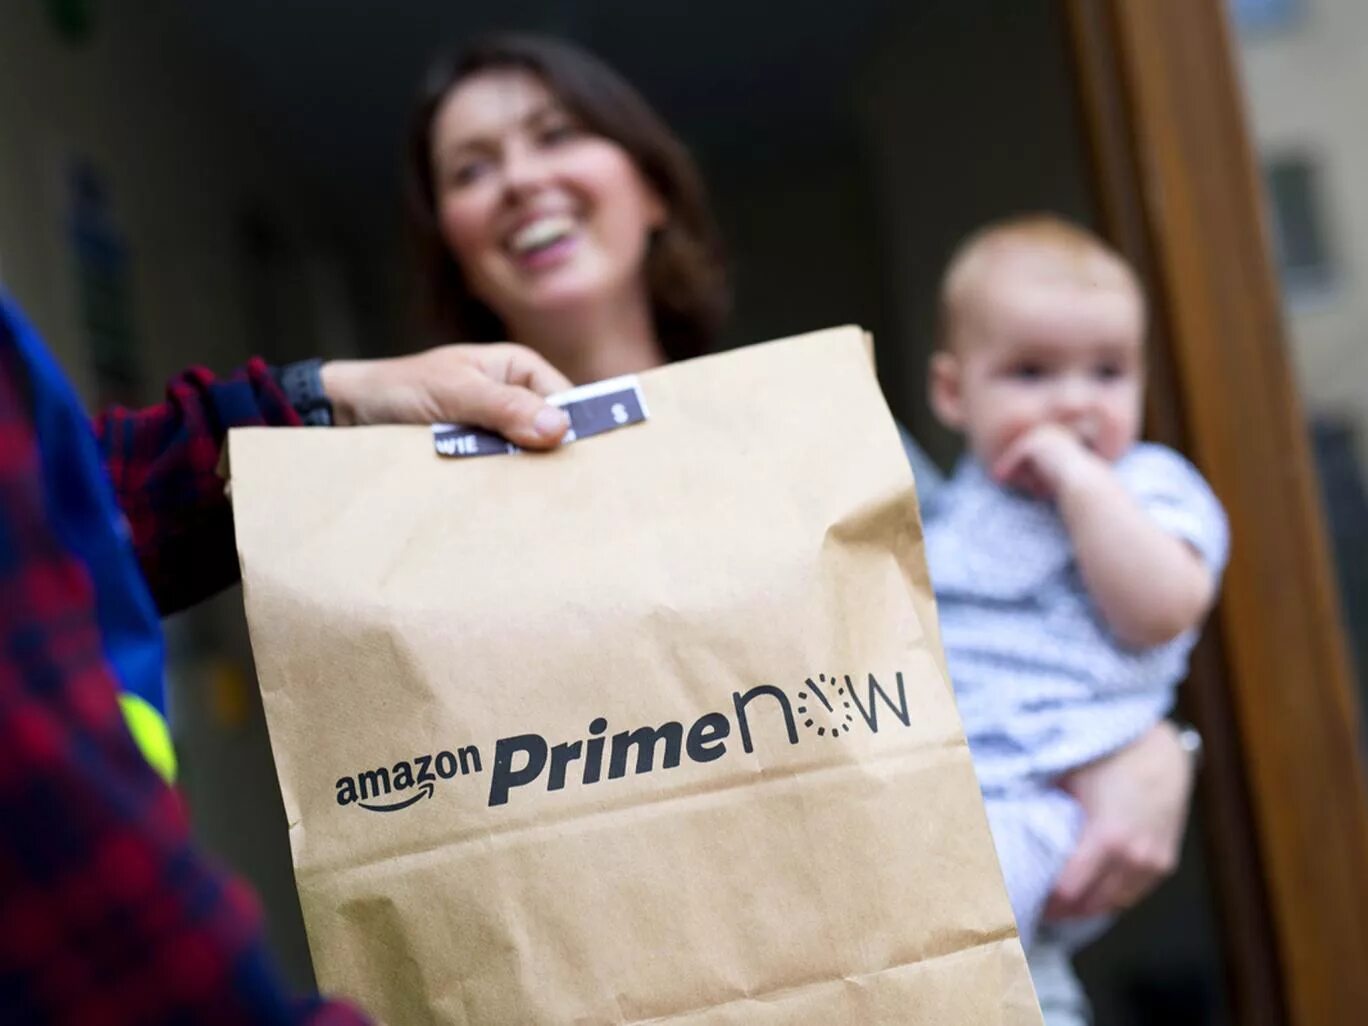 Amazon home. Amazon Prime. Amazon Prime услуги. Prime Now. Amazon Prime Day.